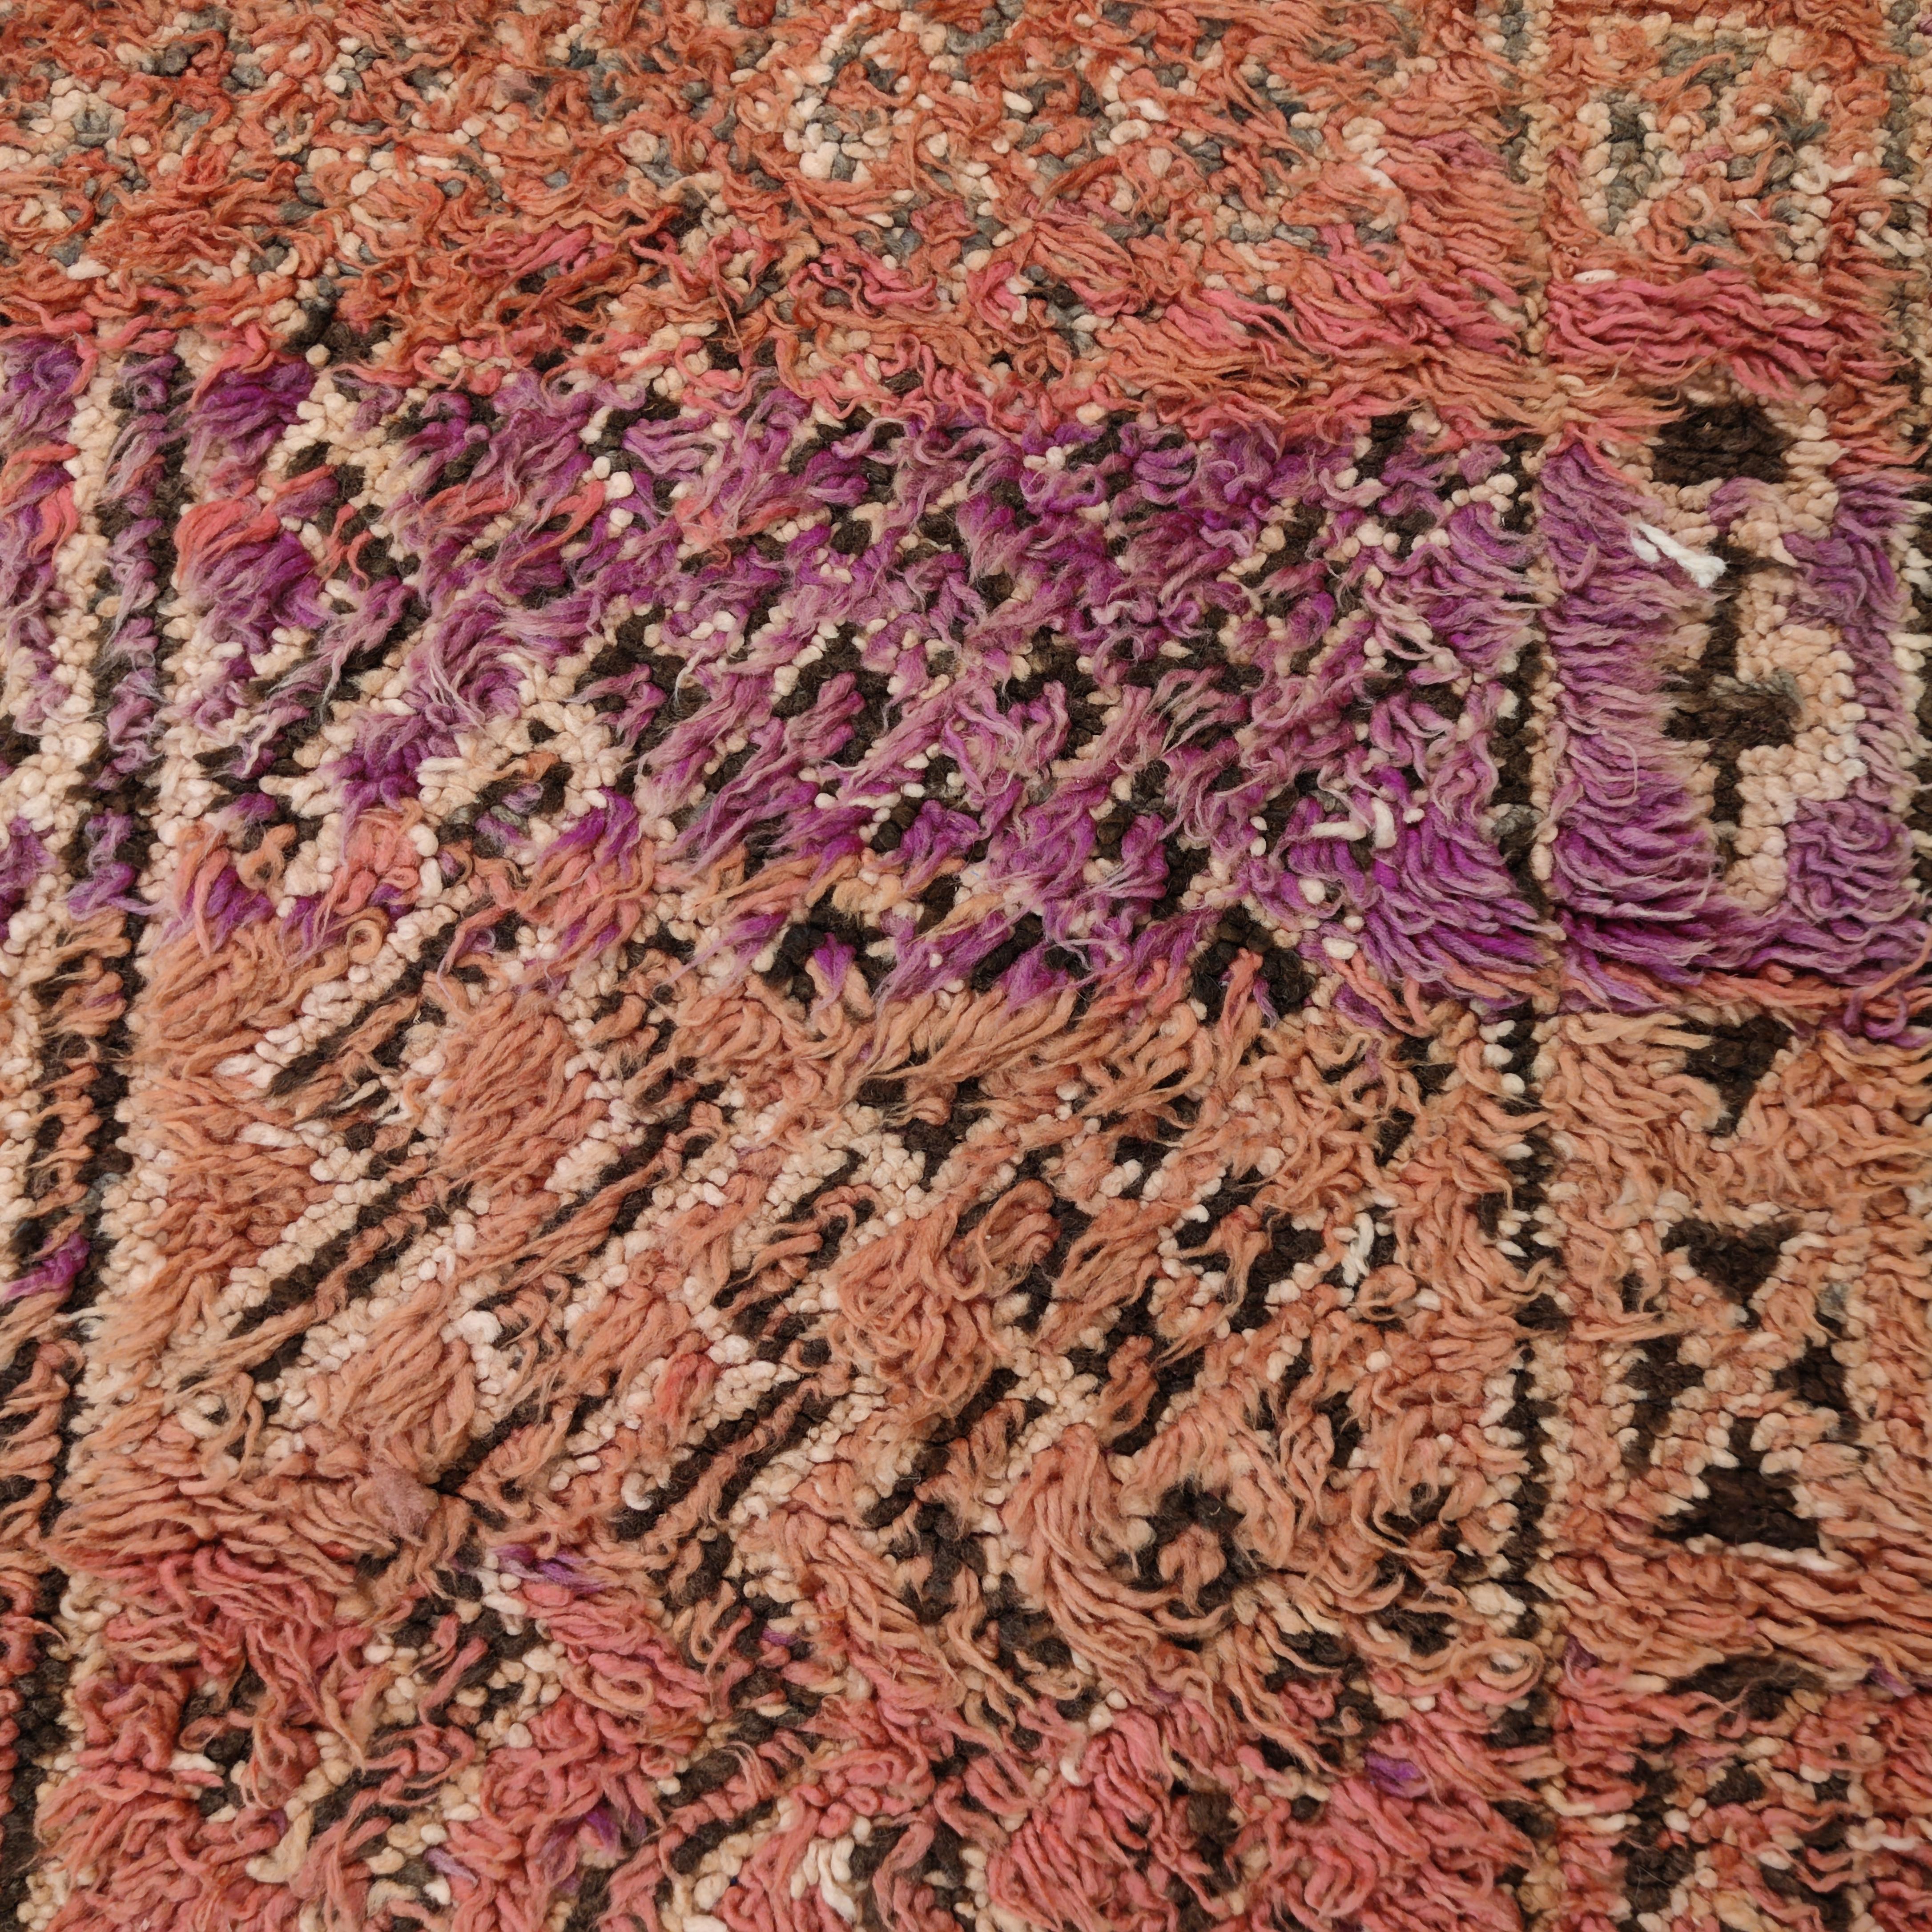 Les tapis de la tribu Beni Mguild, située dans les montagnes du Moyen Atlas marocain, sont tissés avec de la laine riche en lanoline et construits de manière particulièrement robuste. Nous voyons ici un motif et une texture typiques de Beni Mguild,